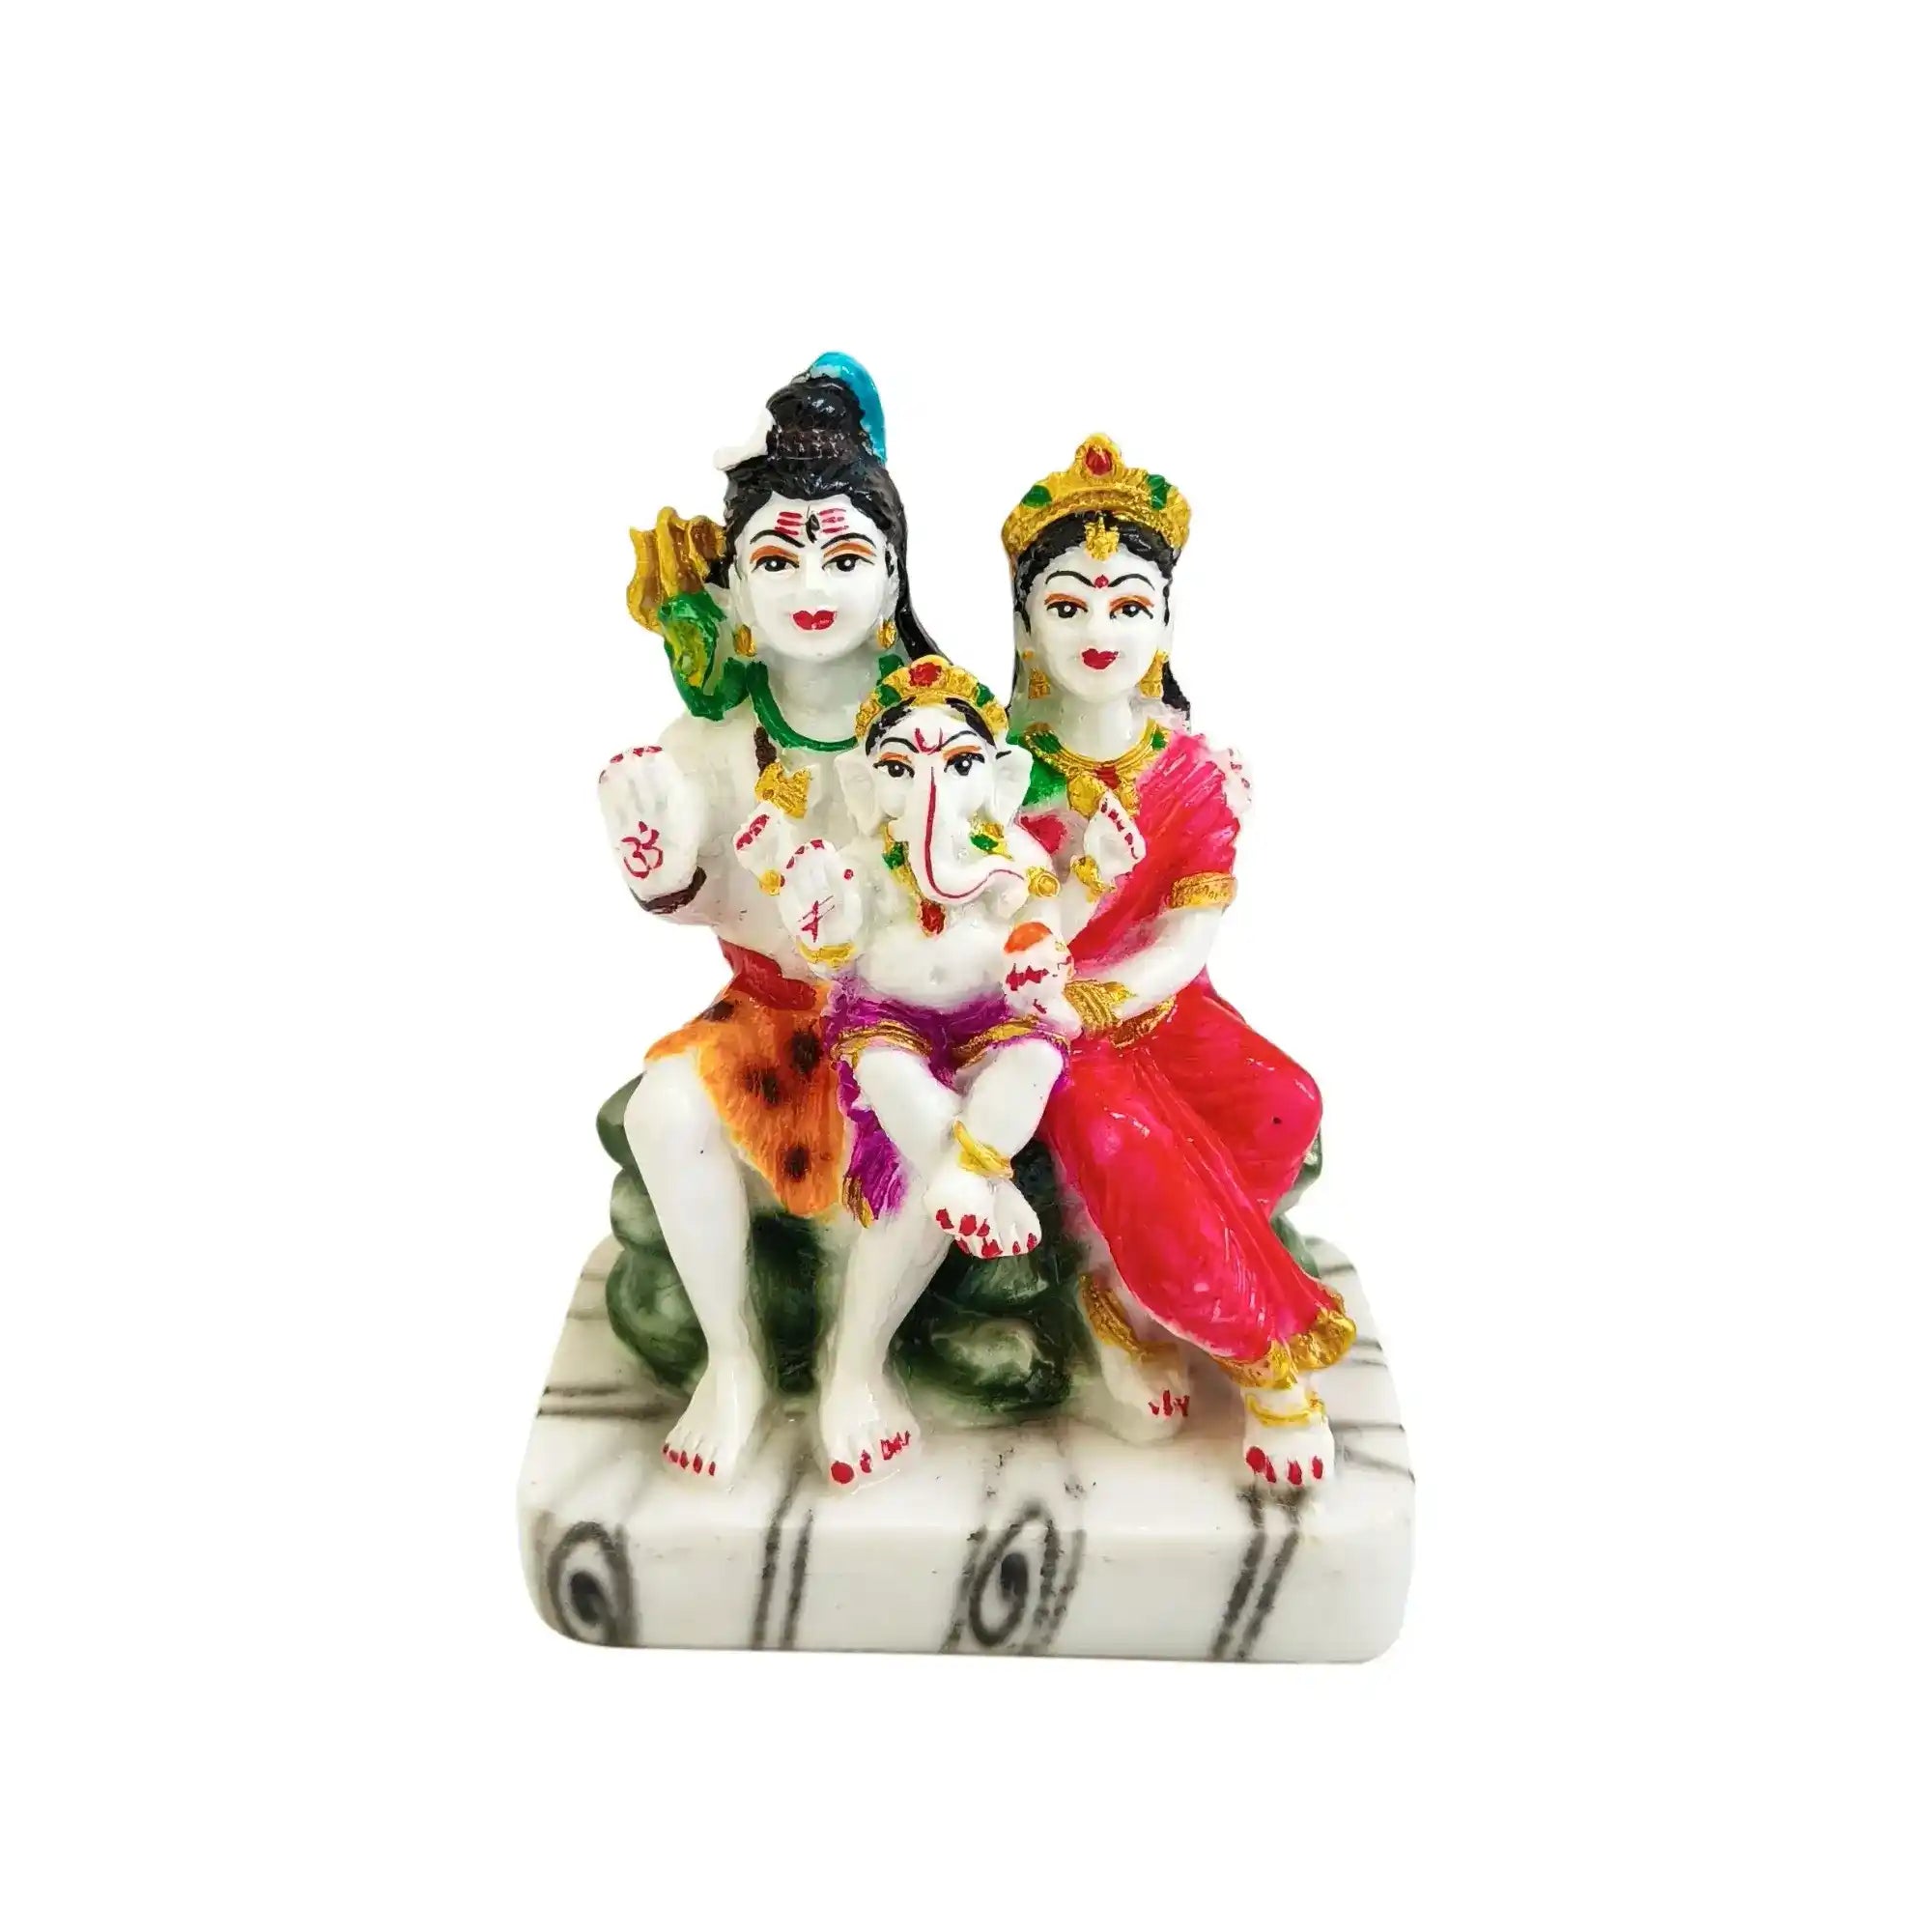 Blessings of Shiva Parvati Ganesha GI 01